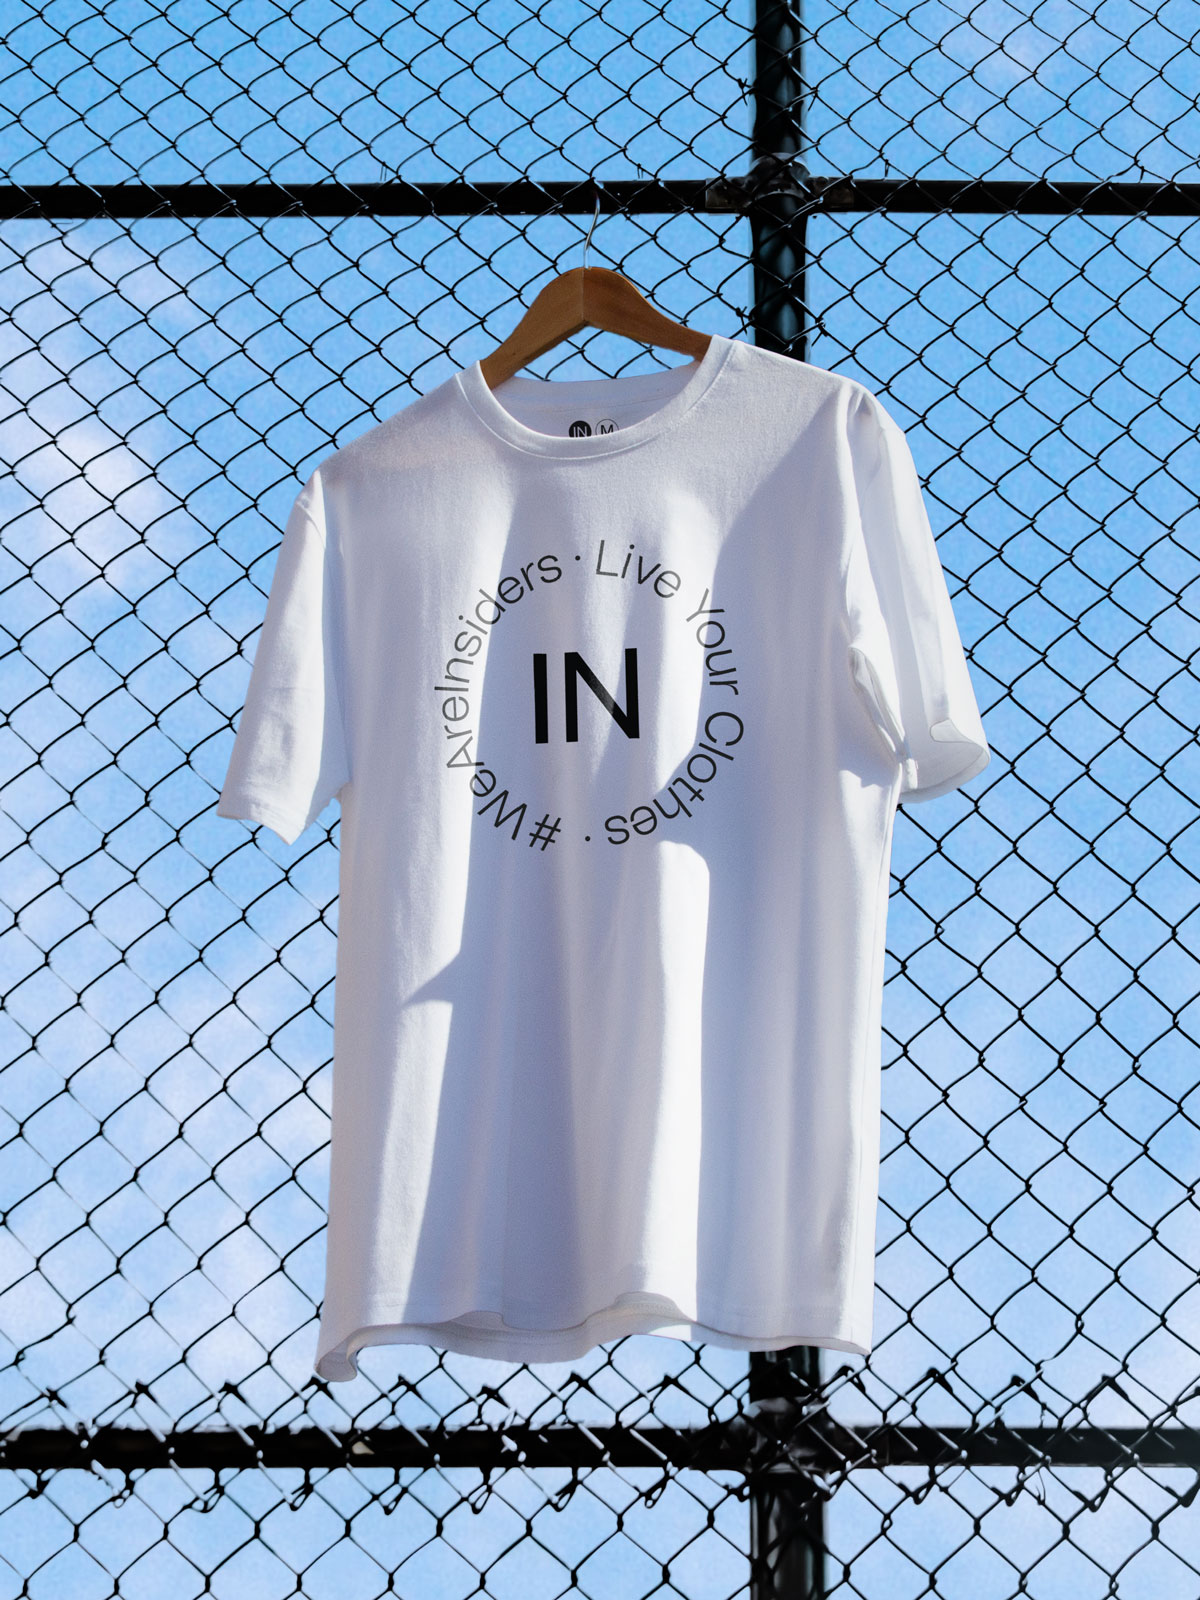 INSIDE_tshirt2